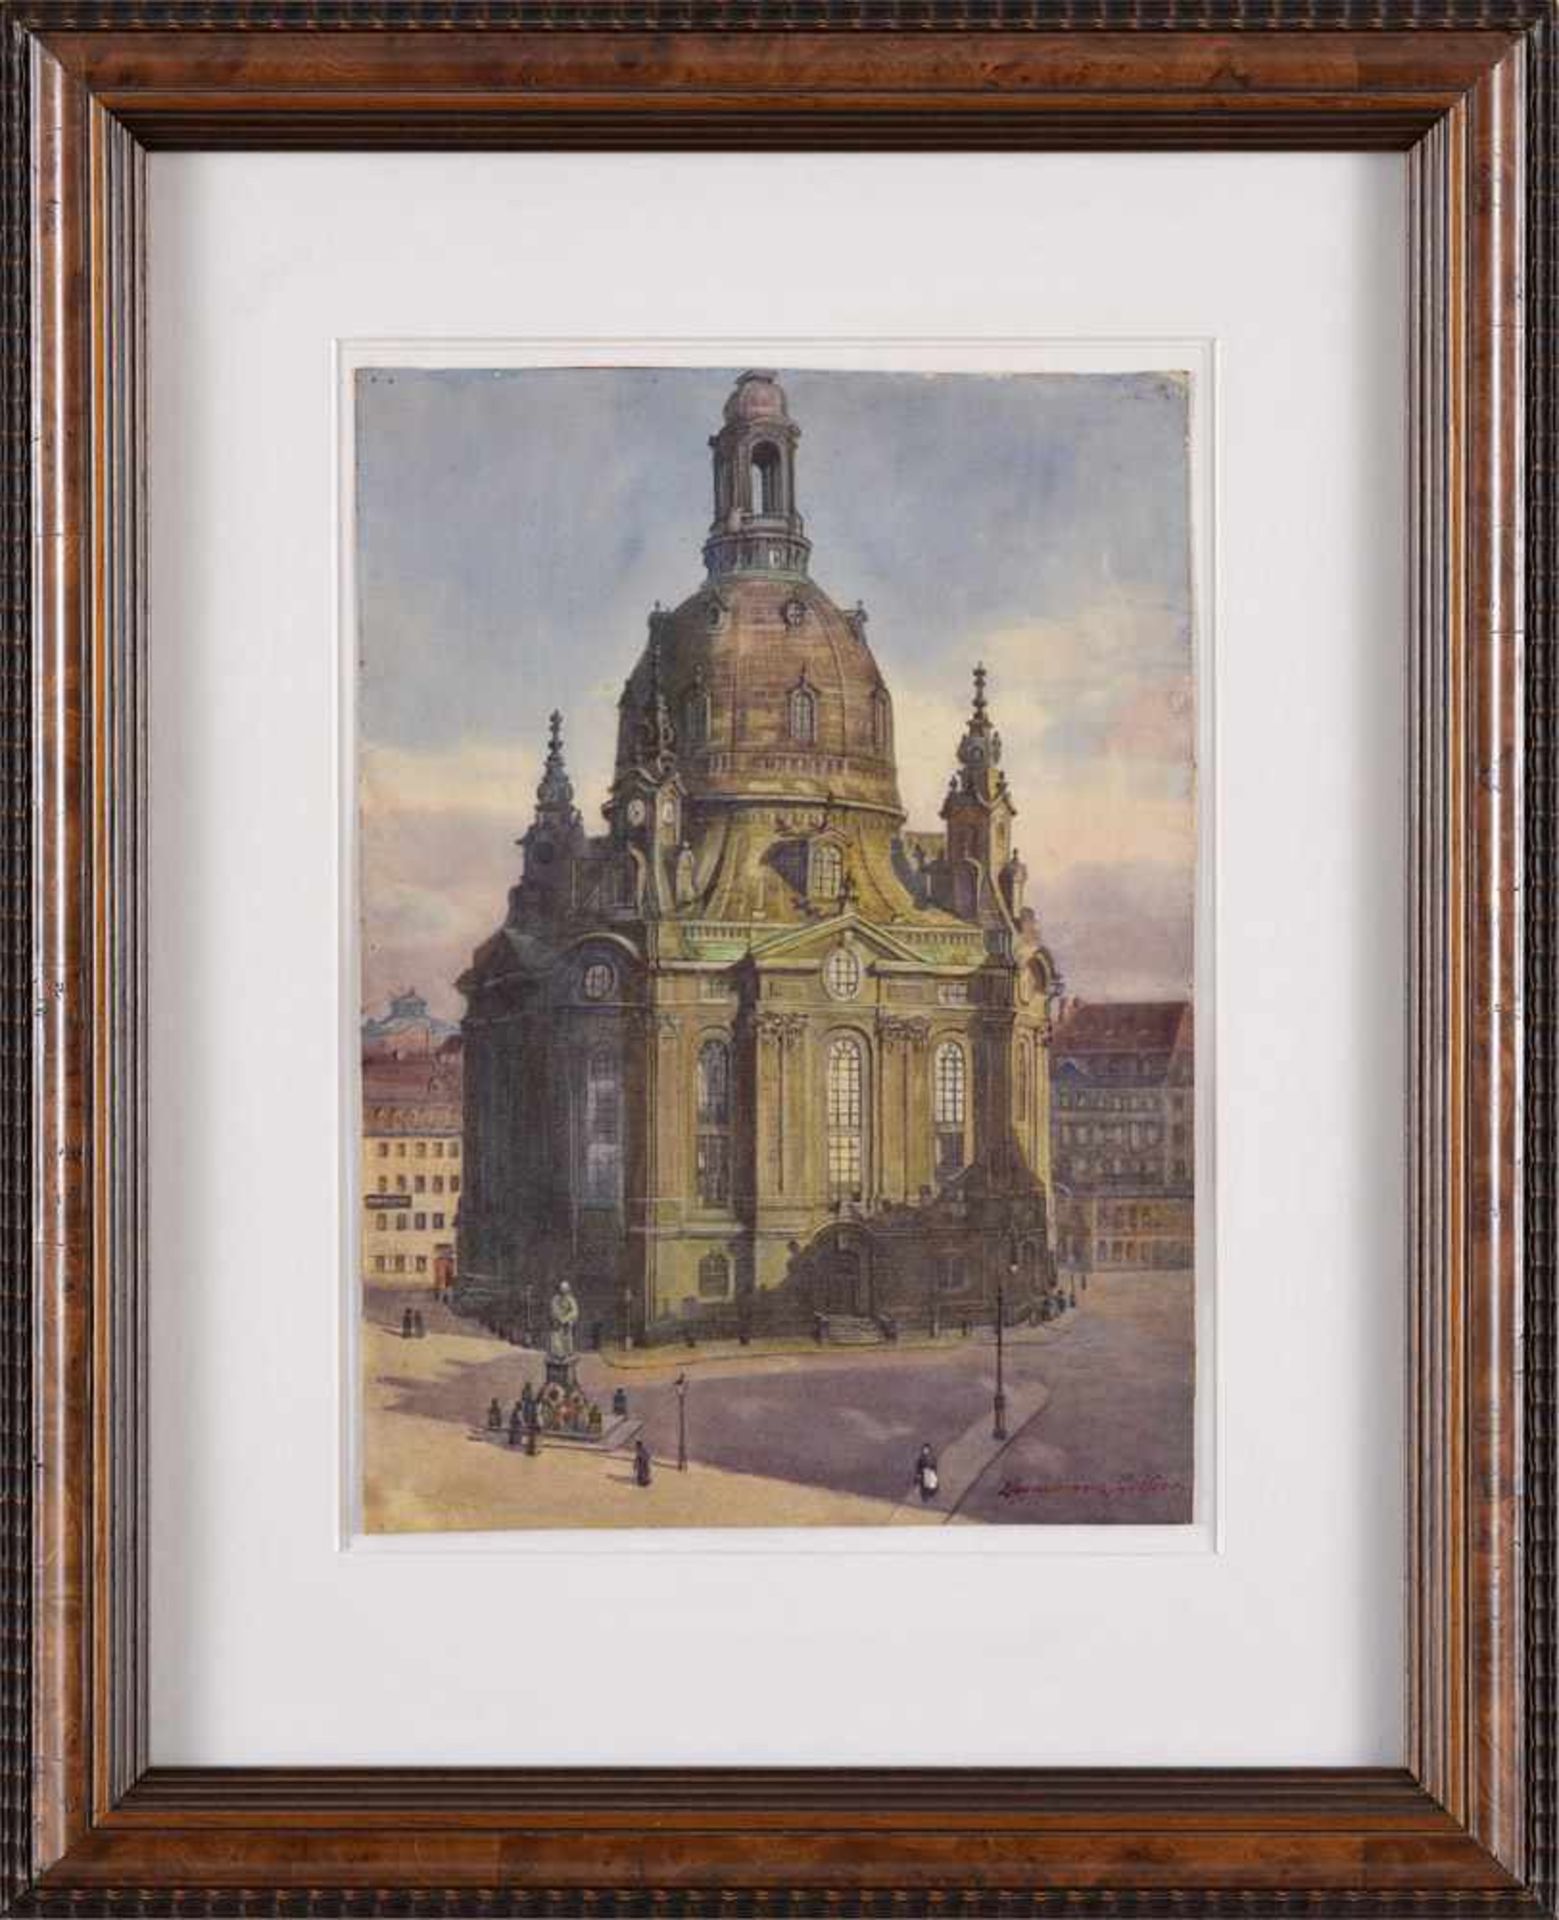 Undeutlich signiert Um 1900Die Frauenkirche zu Dresden.Aquarell. 38 x 27,5 cm. - Bild 2 aus 2